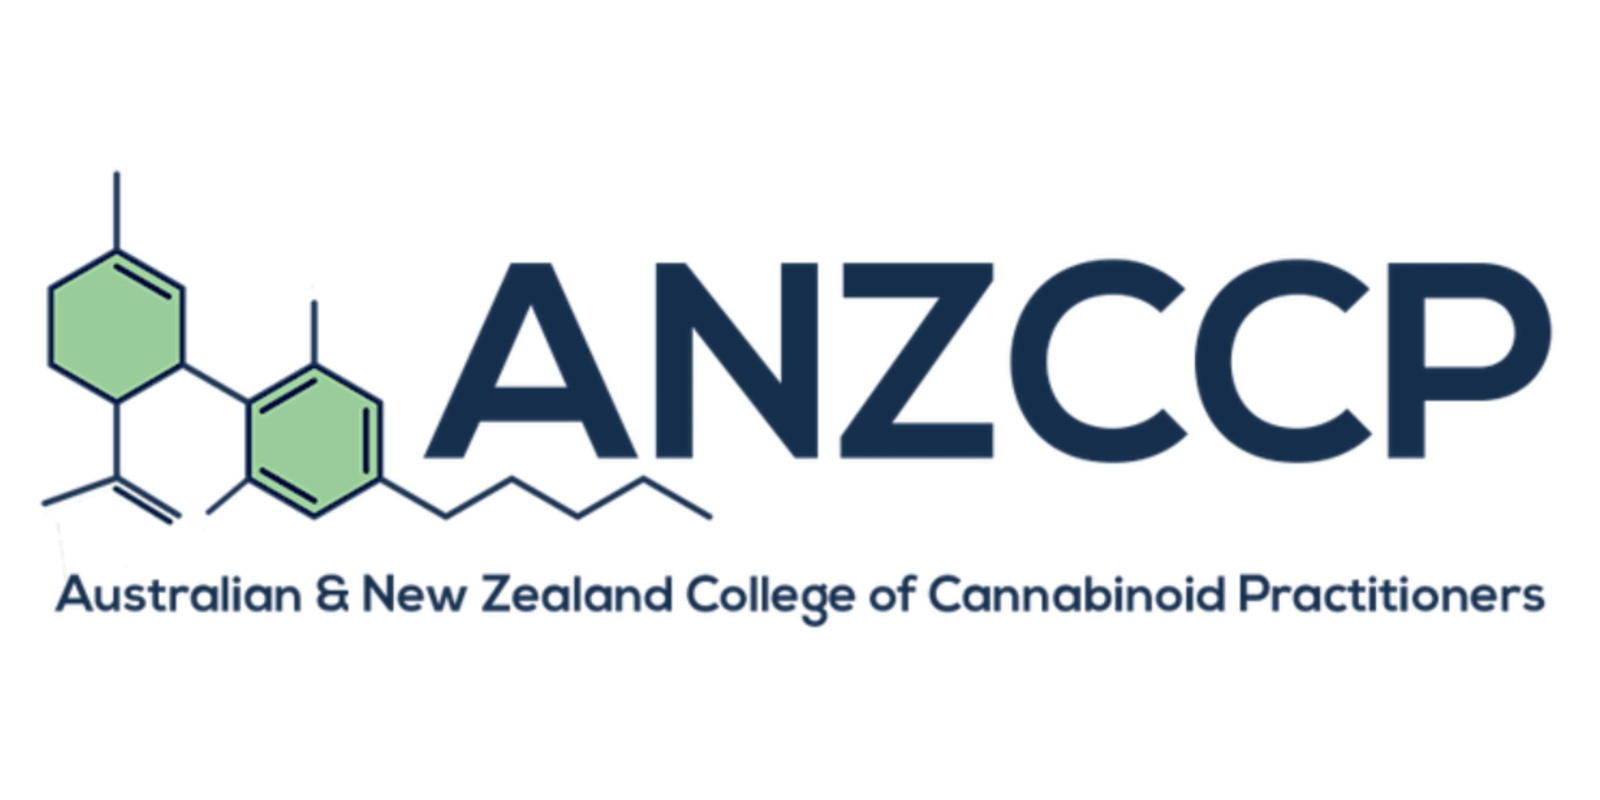 ANZCCP's banner